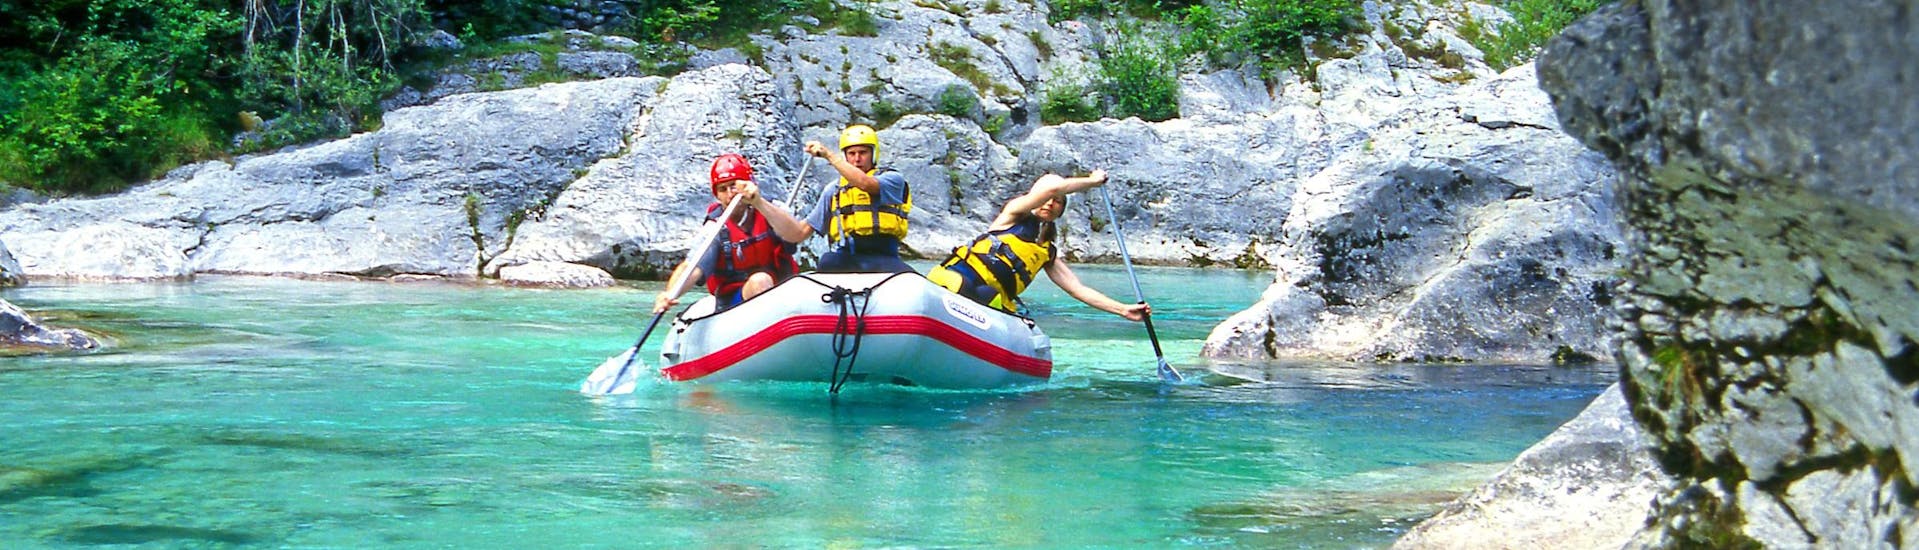 Un groupe d'amis pagaye dans un raft lors d'une activité de rafting dans la destination réputée pour le rafting Sušec.